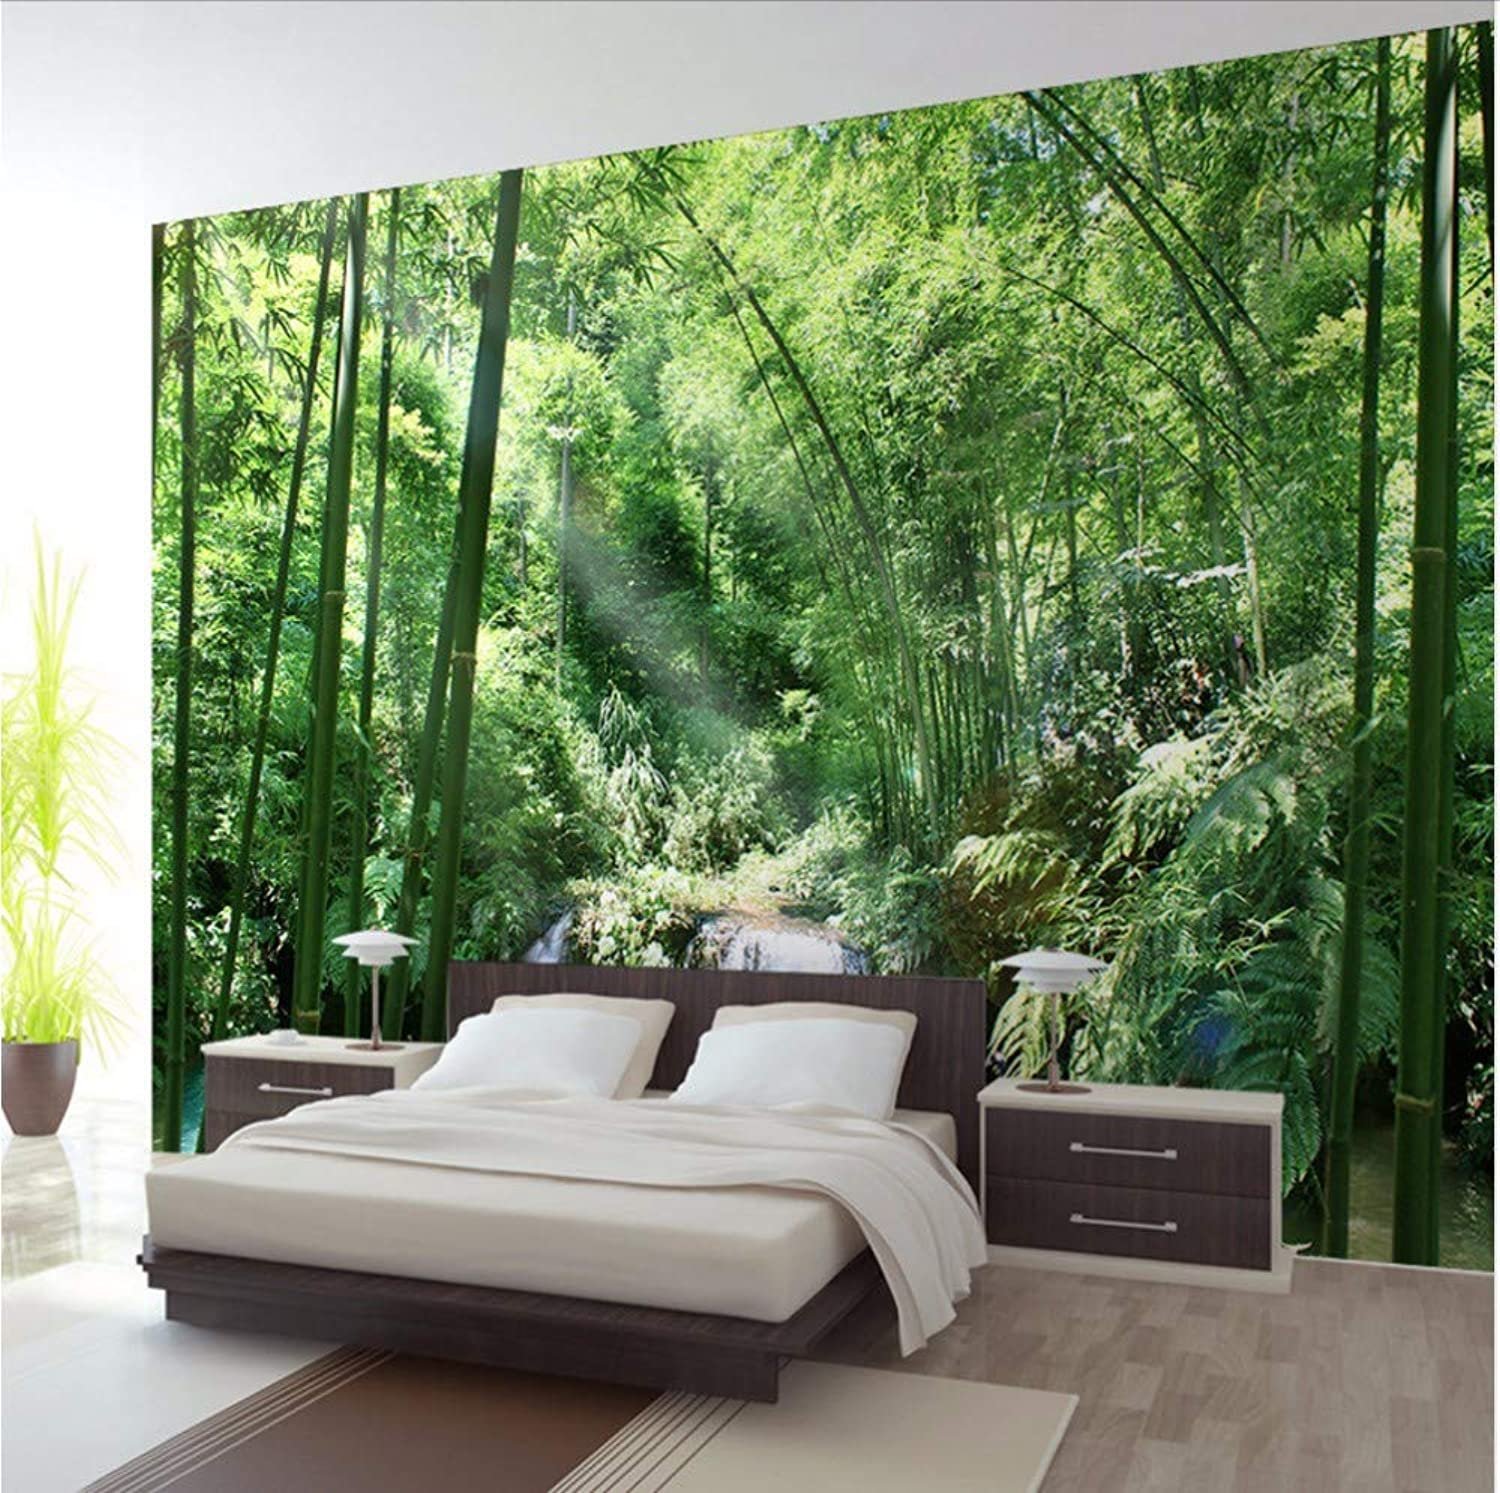 Обои на стену лес. Affresco папоротник. Фотообои в интерьере спальни. Интерьер в стиле природы. Спальня в стиле тропики.